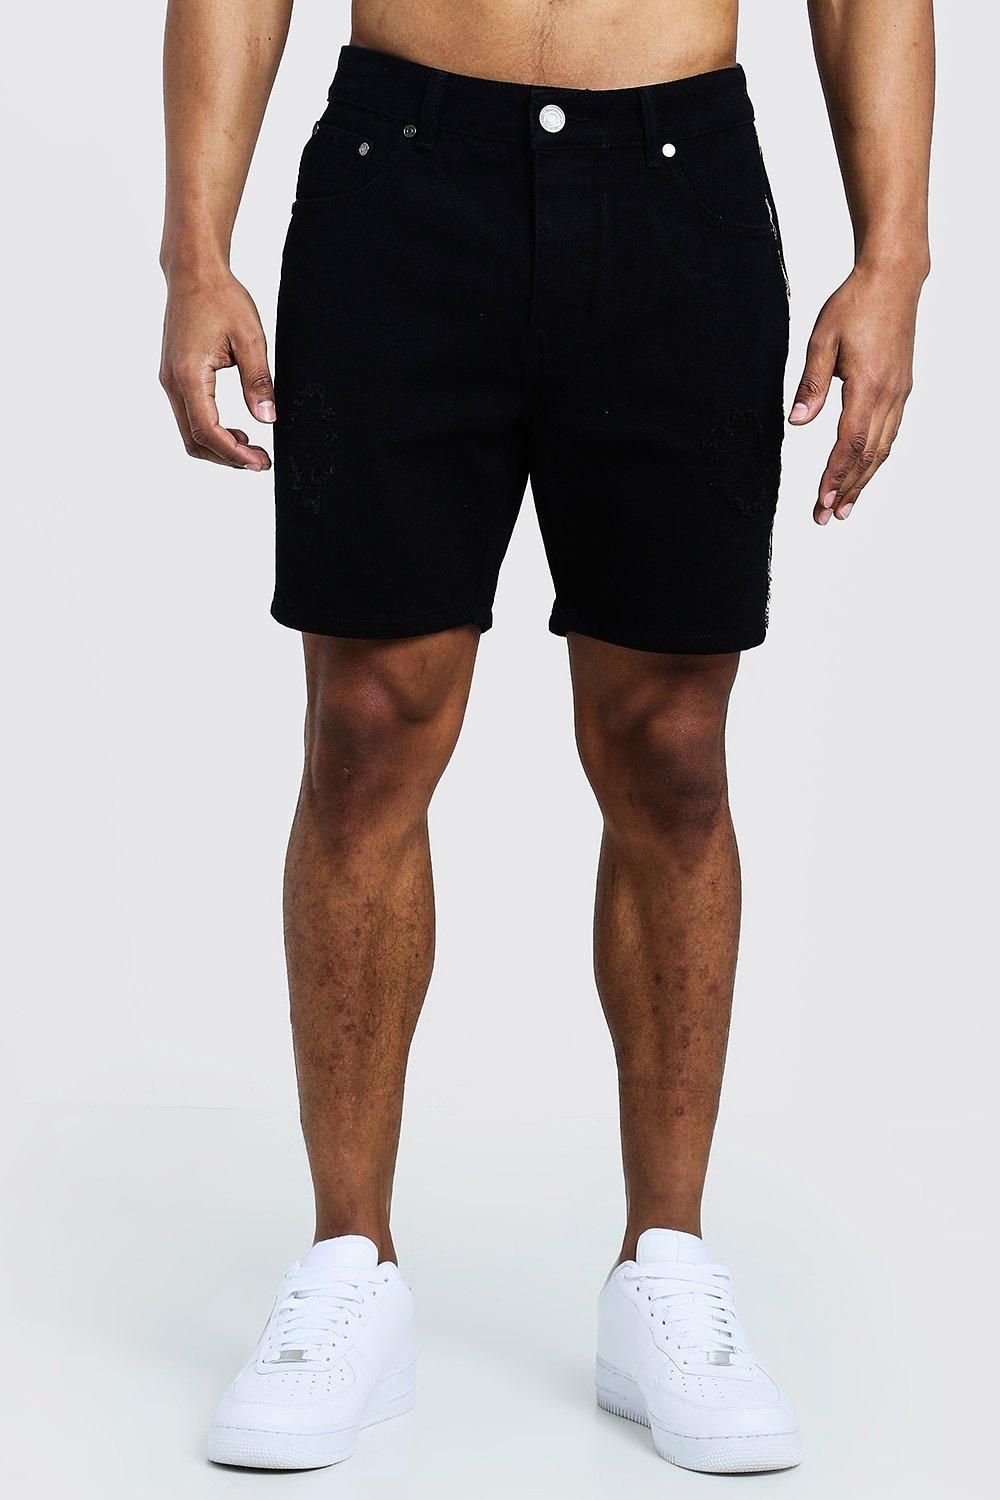 Mens shorts | Shop all shorts for men | boohoo